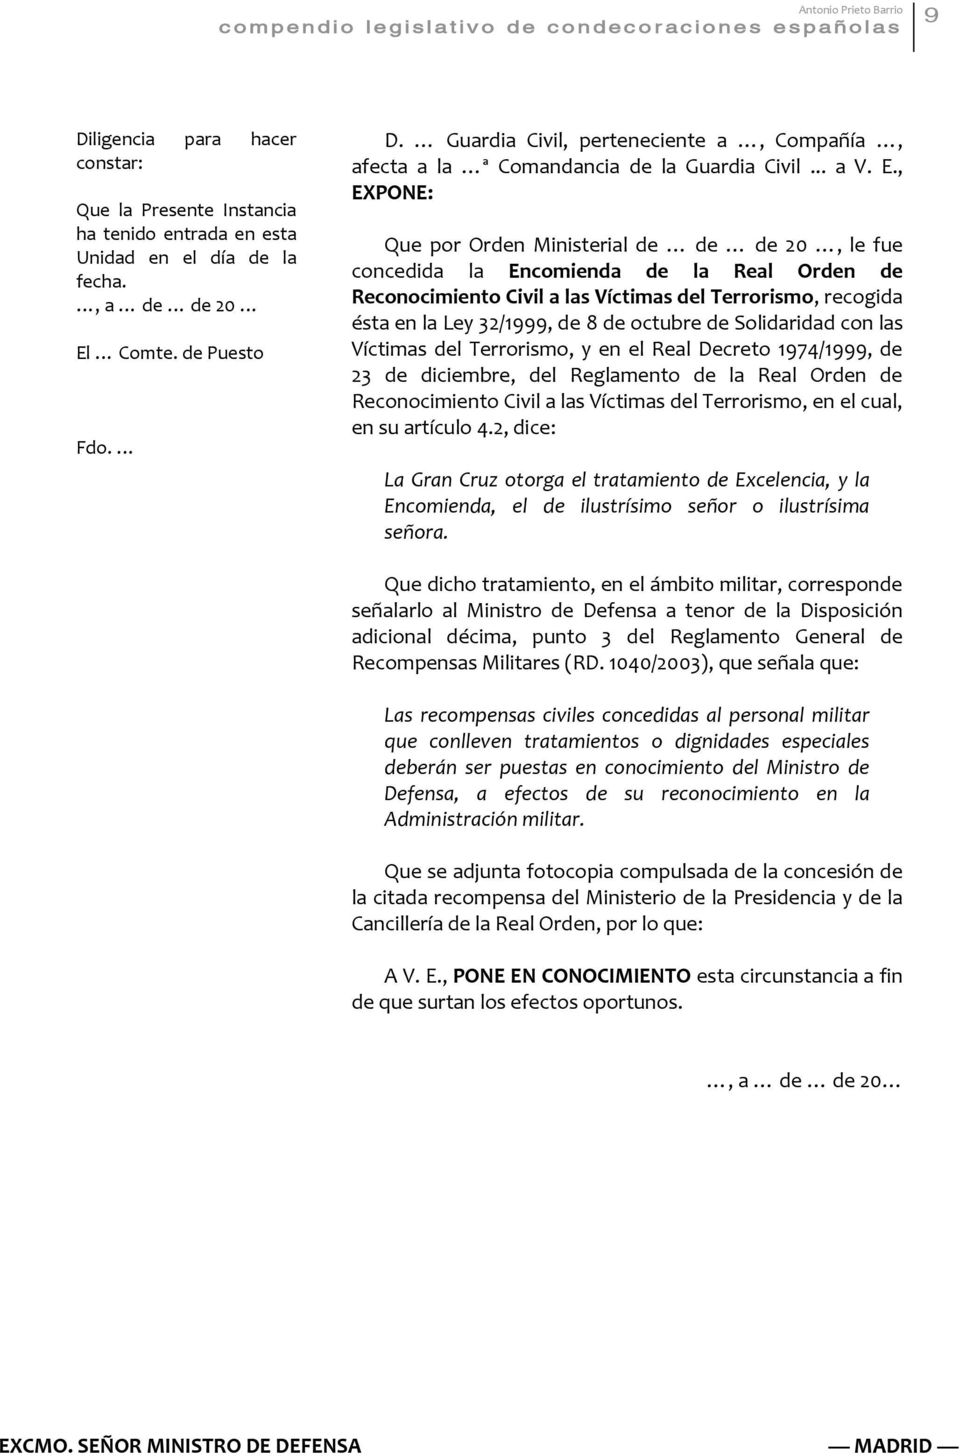 Comte. de Puesto Fdo. D. Guardia Civil, perteneciente a, Compañía, afecta a la ª Comandancia de la Guardia Civil... a V. E.